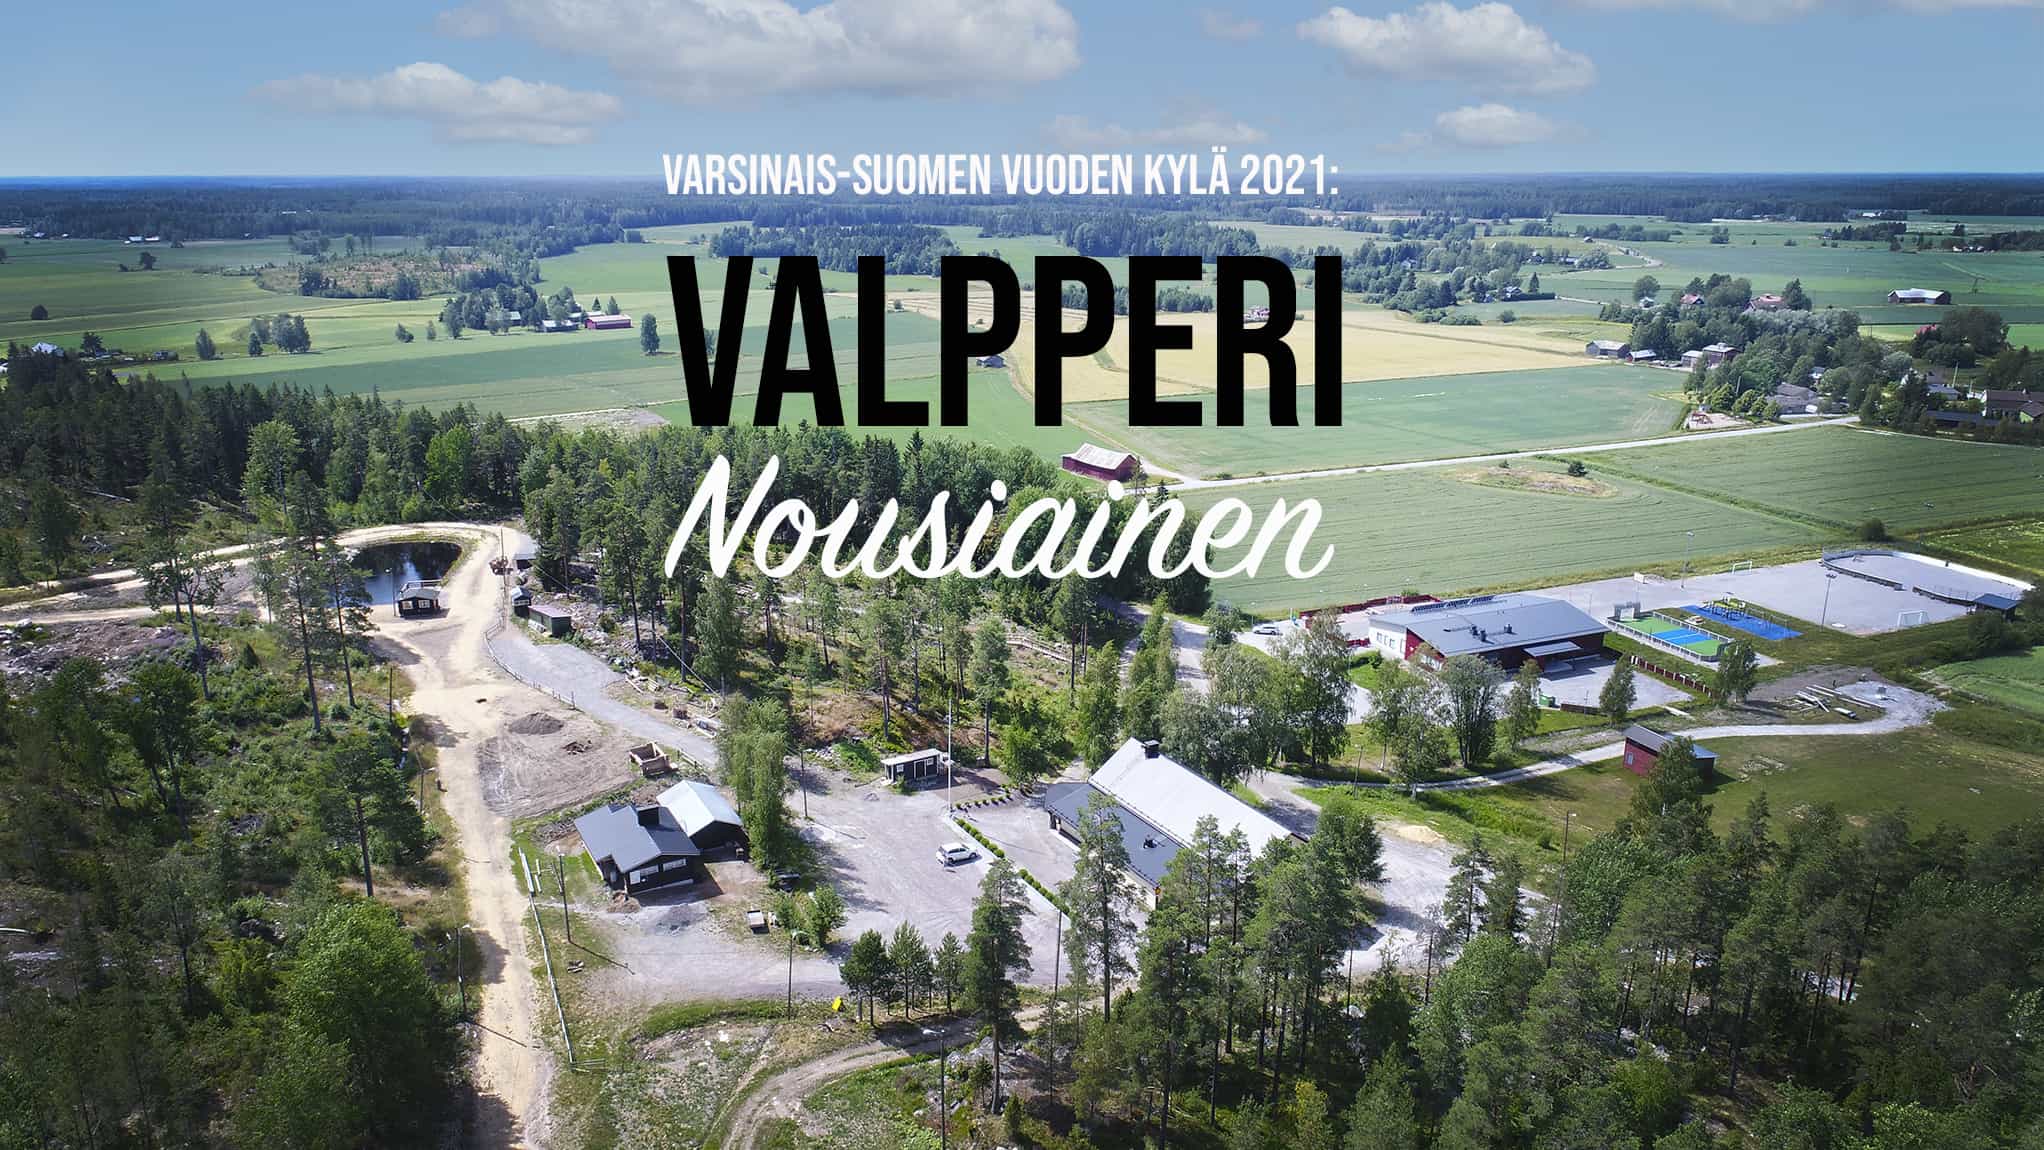 Nousiaisten Valpperi on Varsinais-Suomen Vuoden kylä 2021!